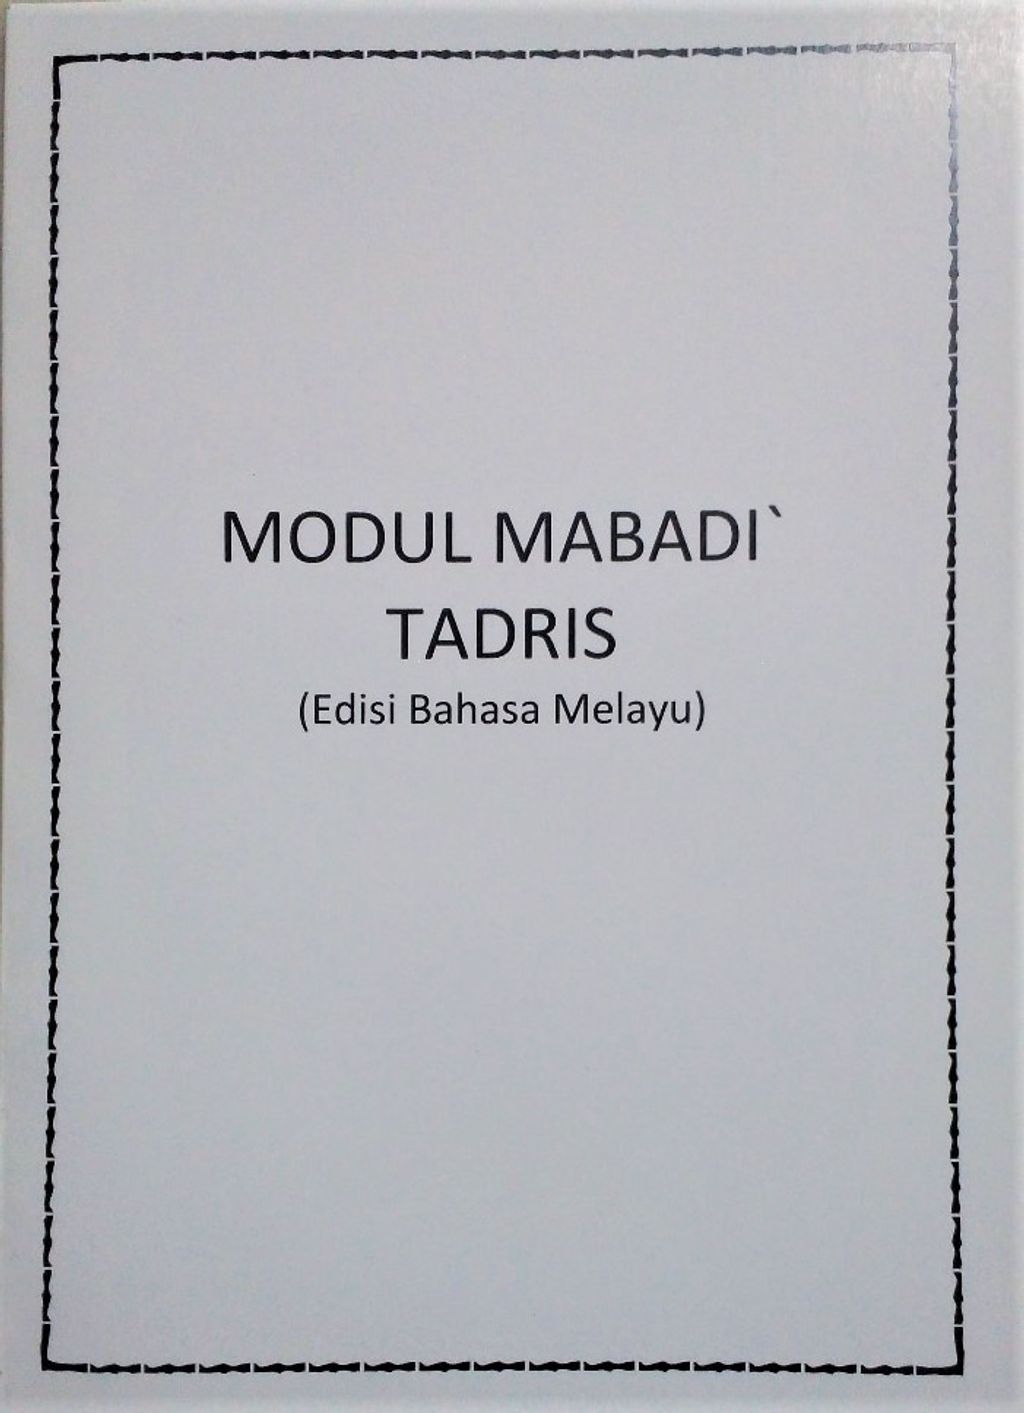 Mabadi' tadris Melayu 5.jpeg